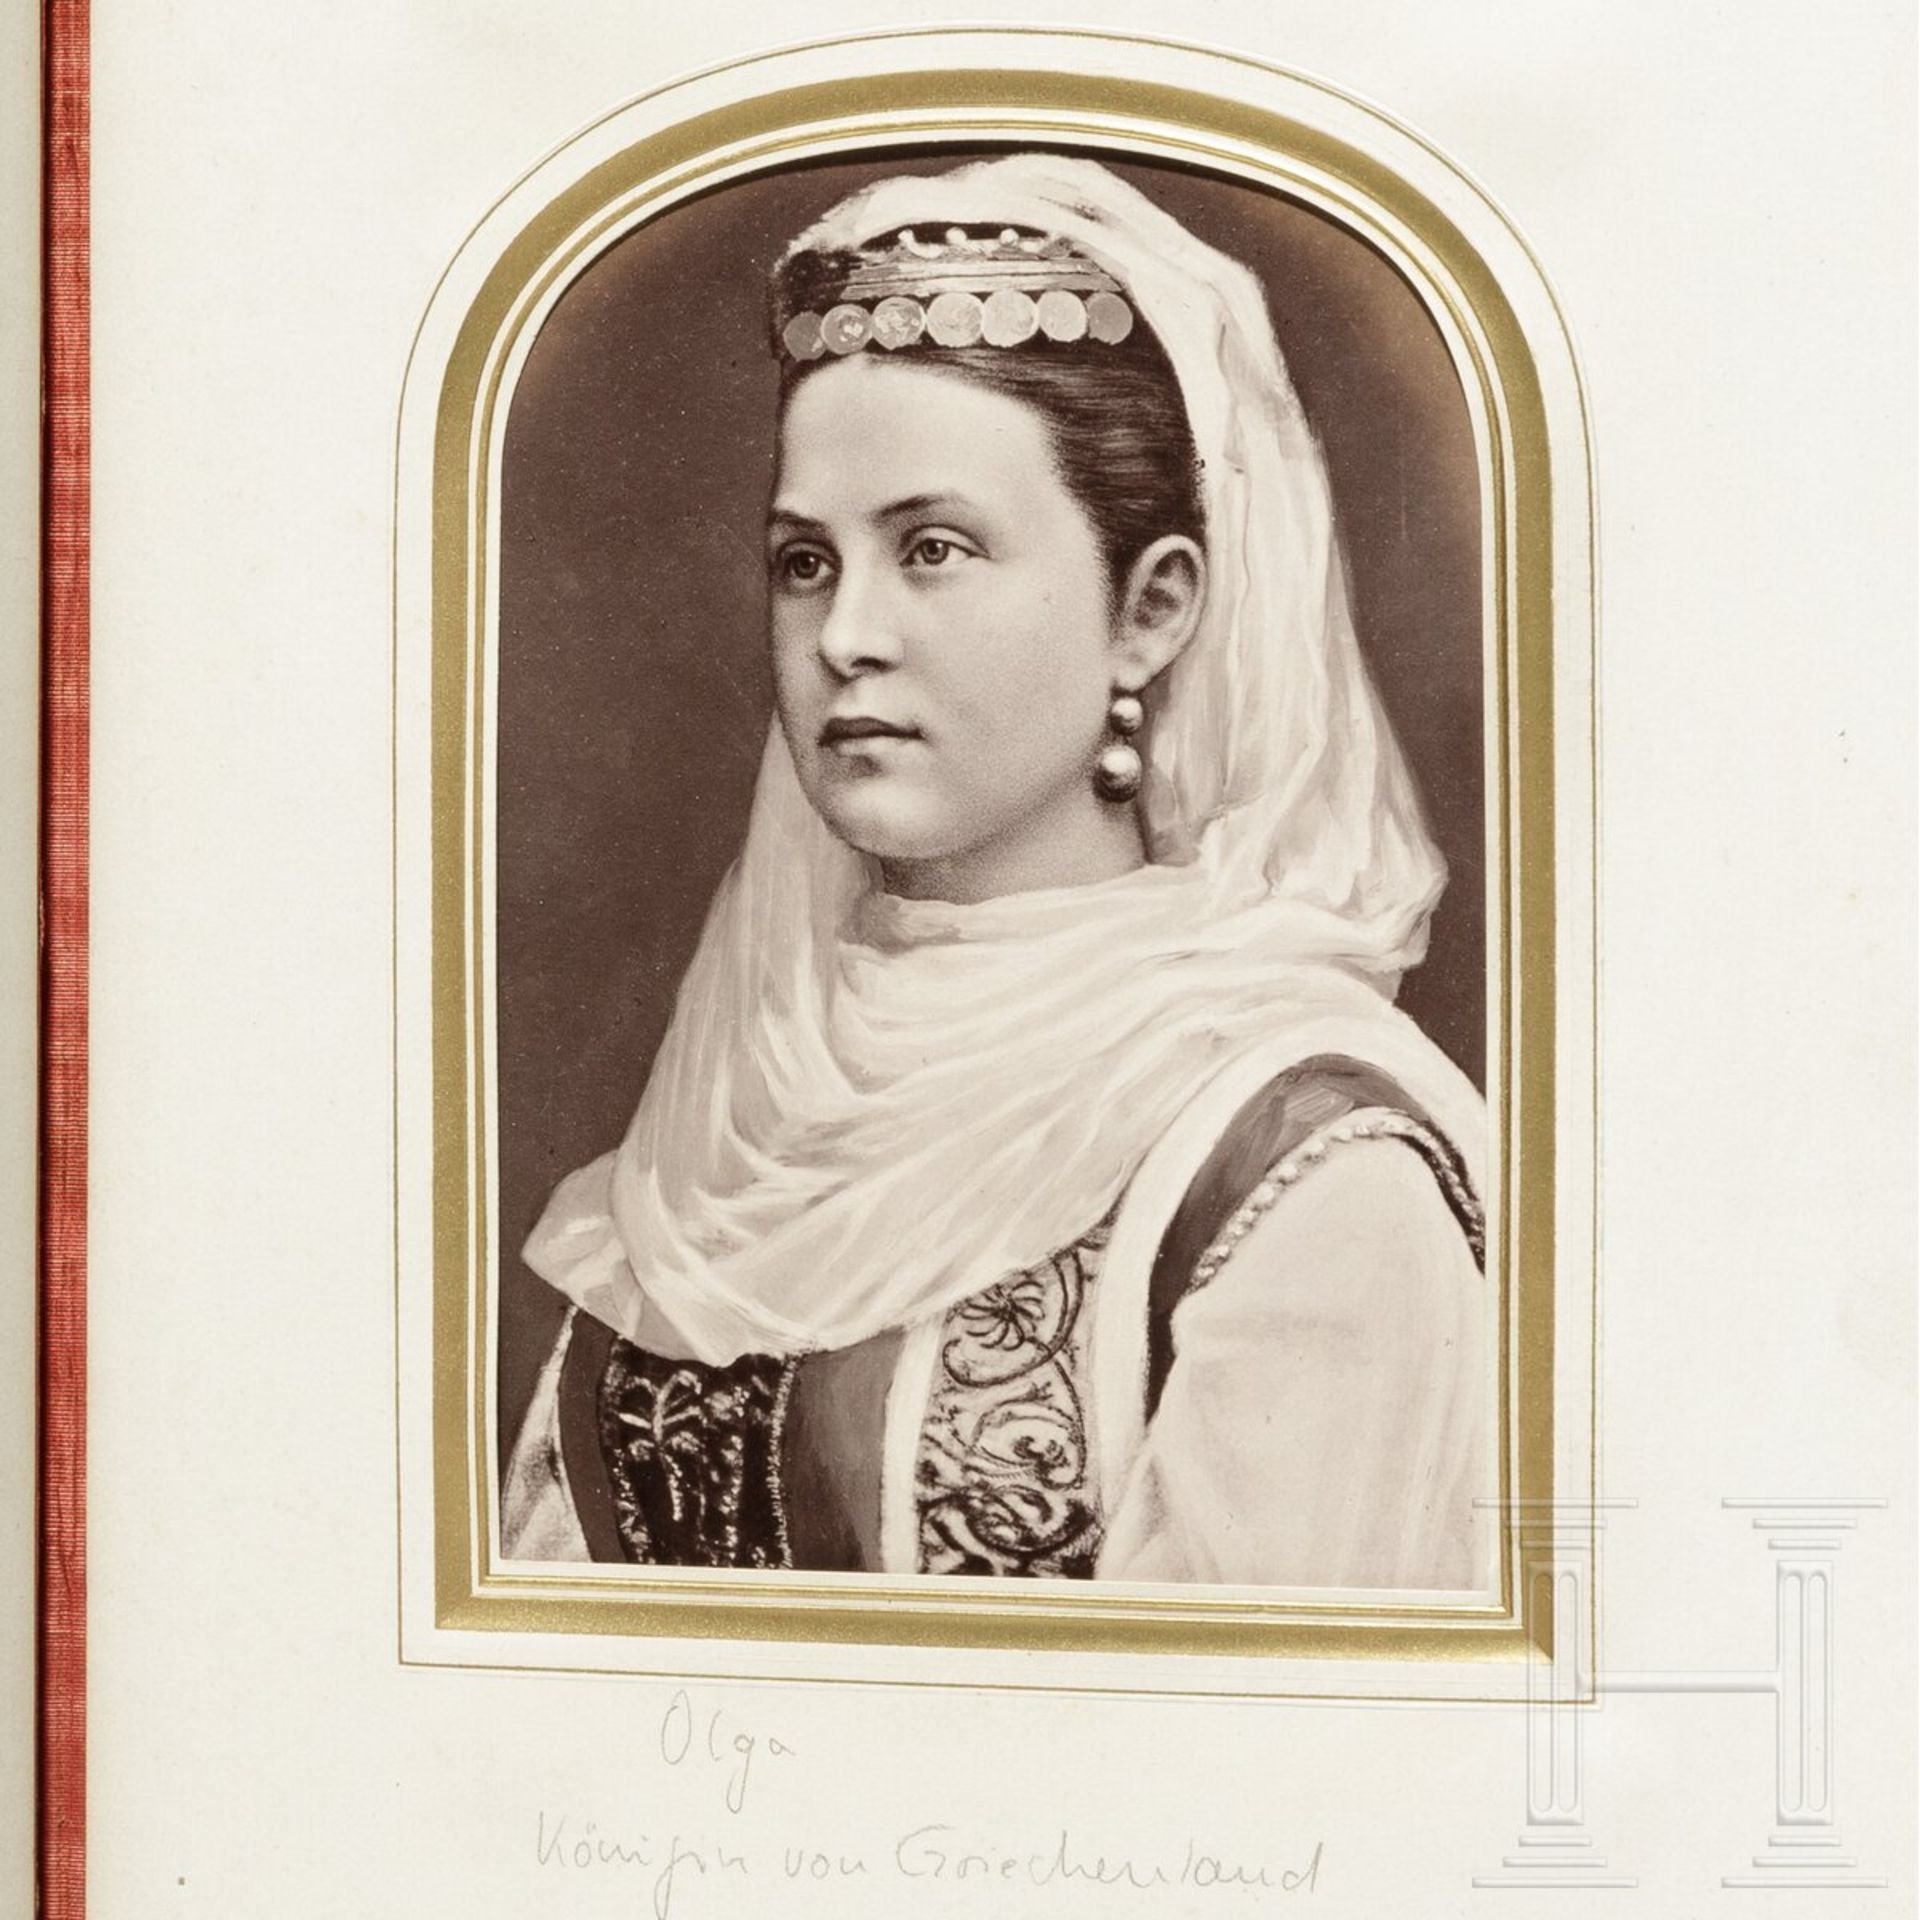 Kaiserin Elisabeth von Österreich - Fotoalbum mit Persönlichkeiten des 19. Jhdts. - Image 13 of 19